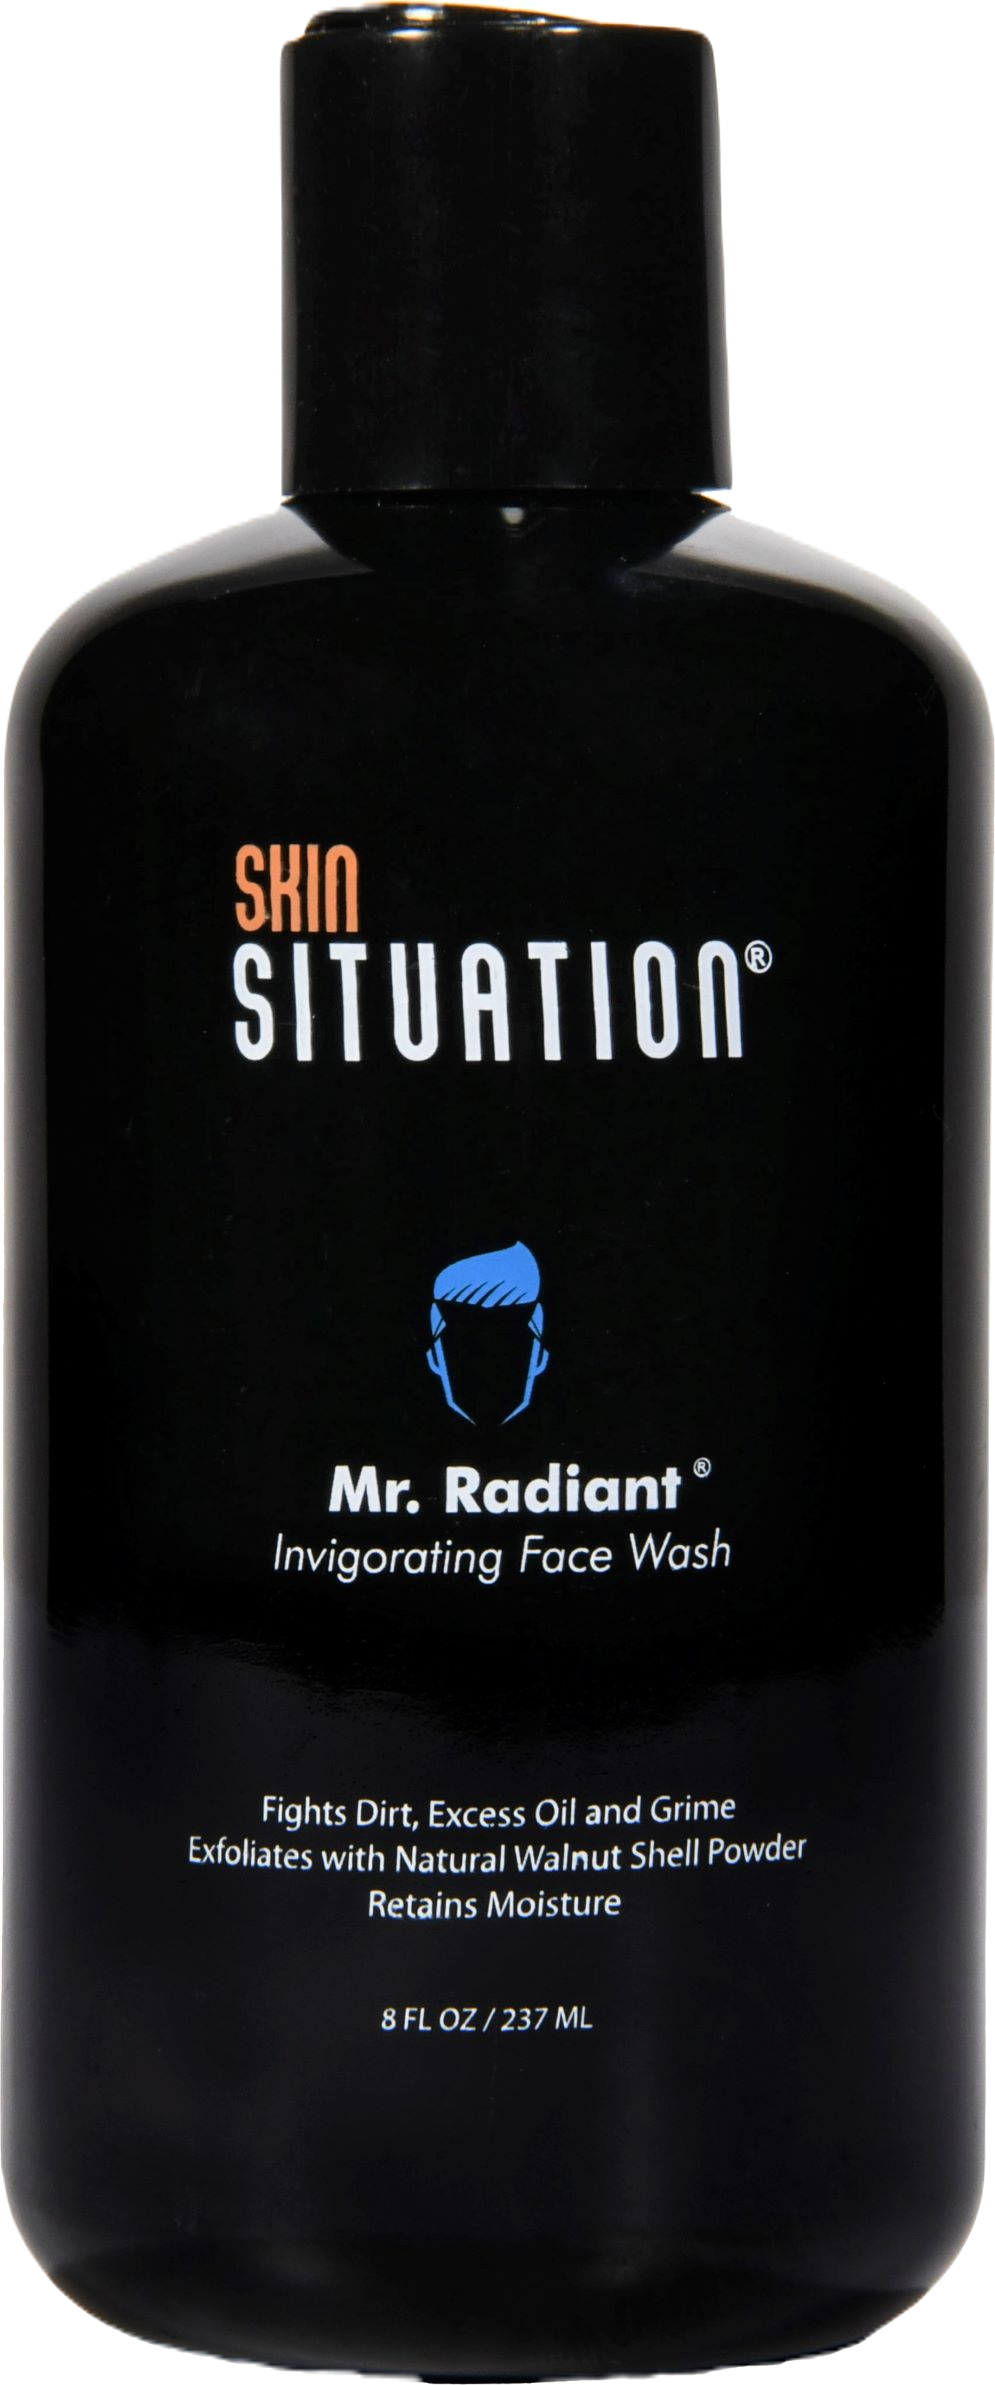 Mr. Radiant Invigorating Face Wash